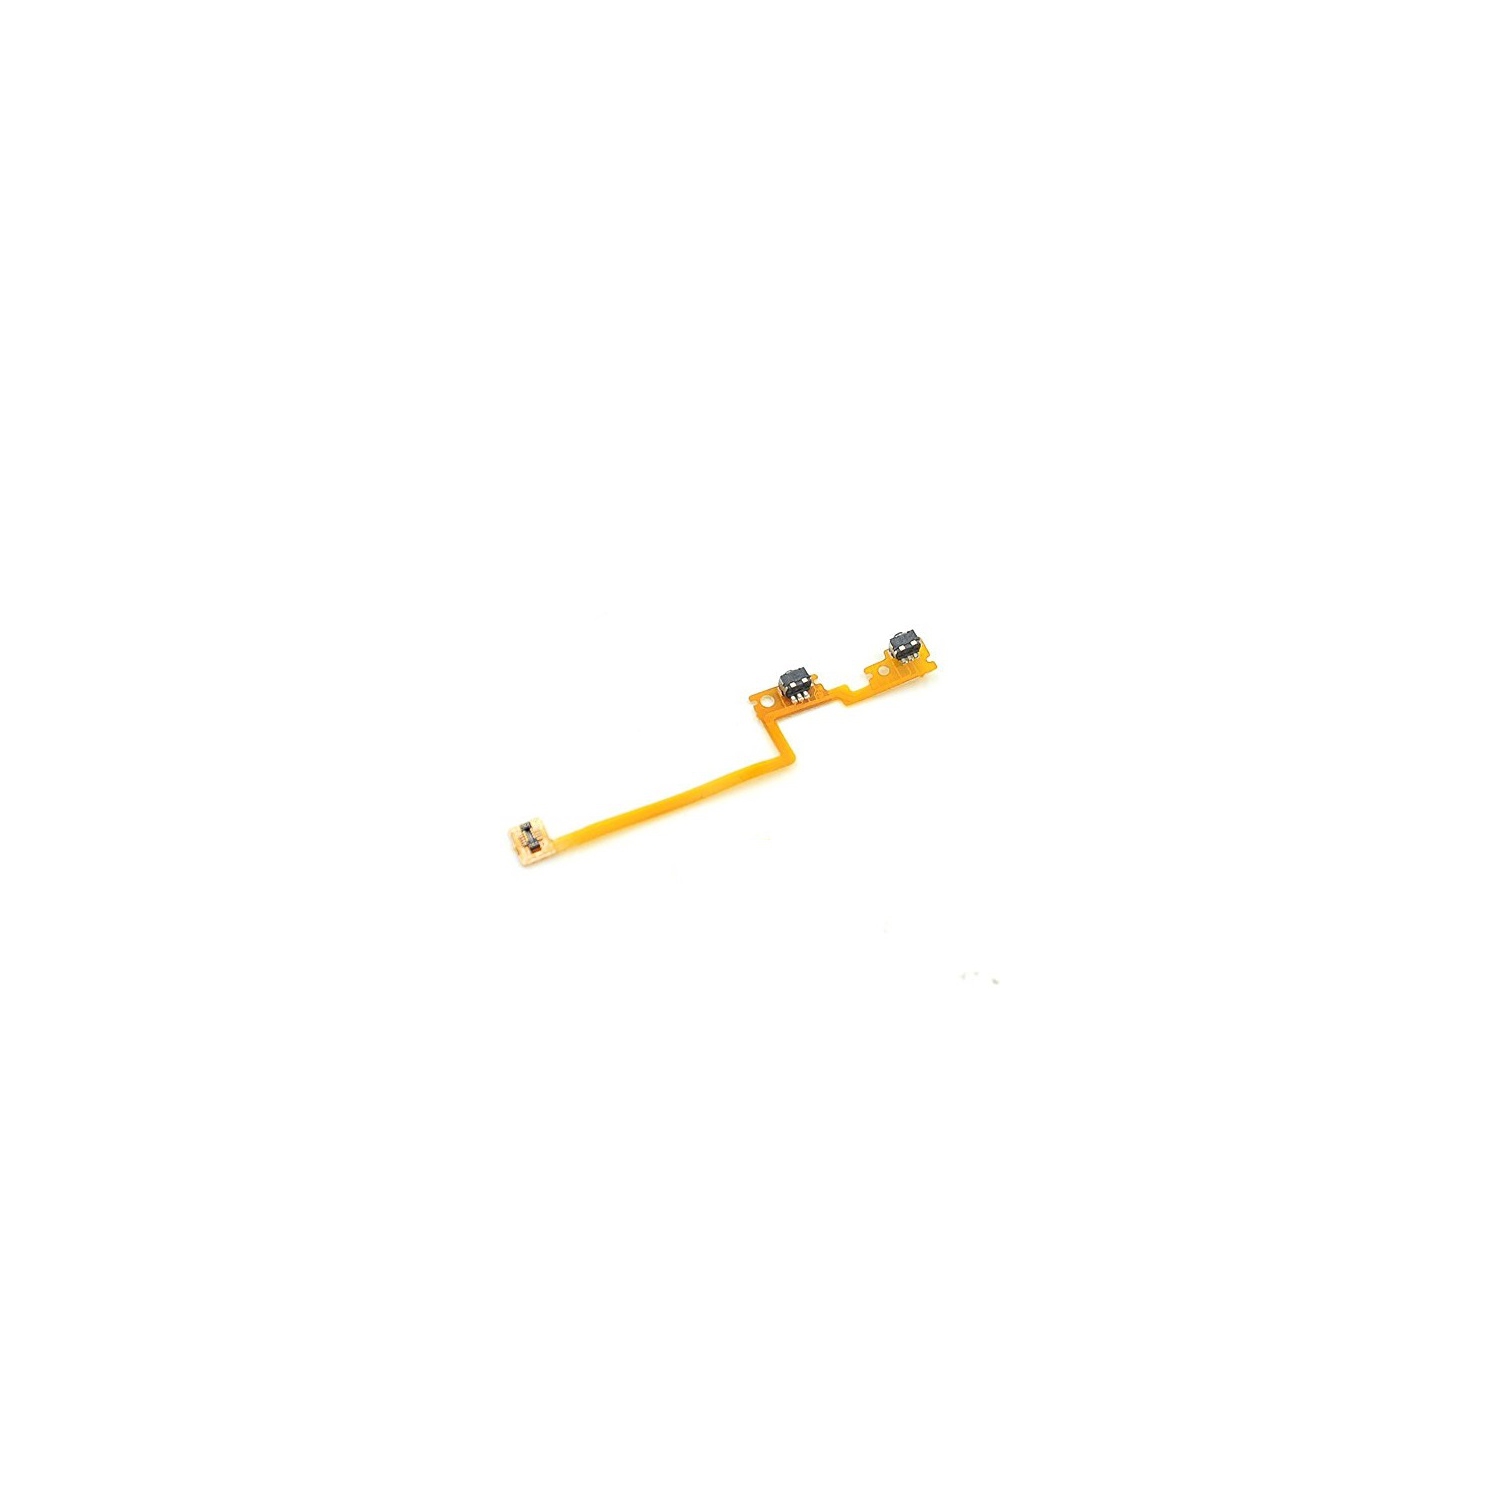 Replacement Left Shoulder Trigger Flex Cable For Nintendo 3DS / 3DS XL 2015